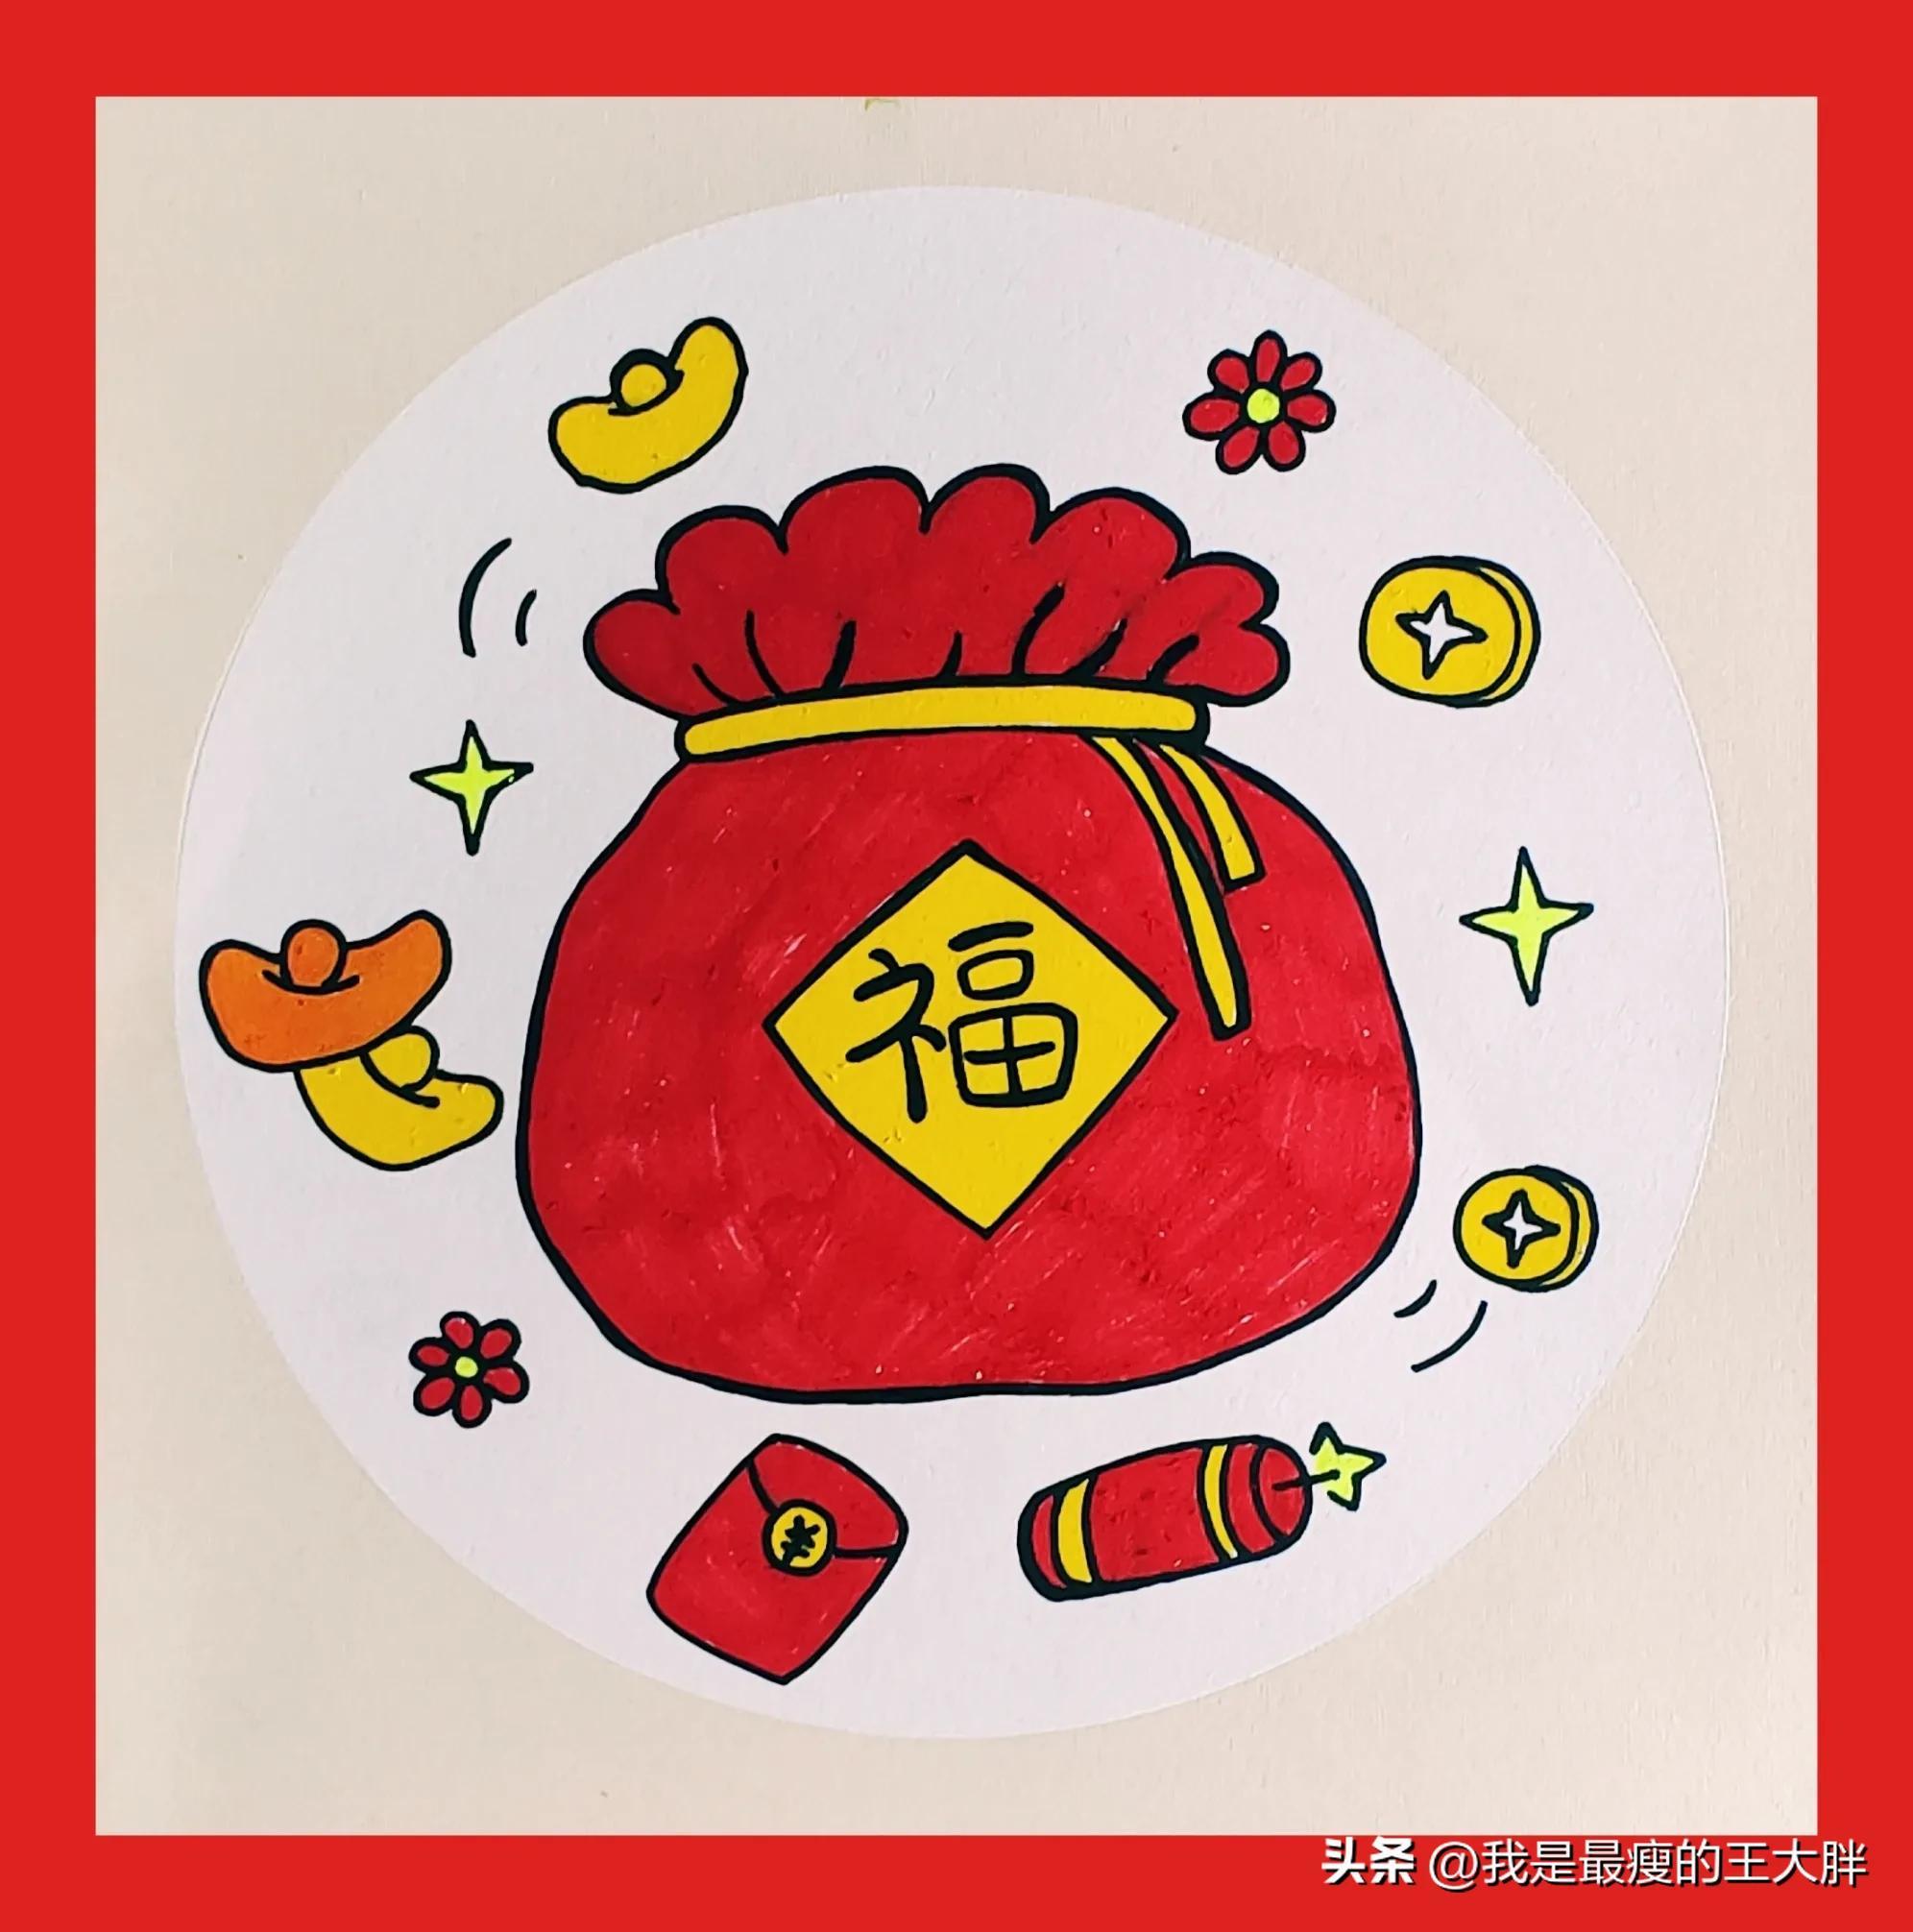 表现春节喜庆气氛的画,画个超简单的新年福袋